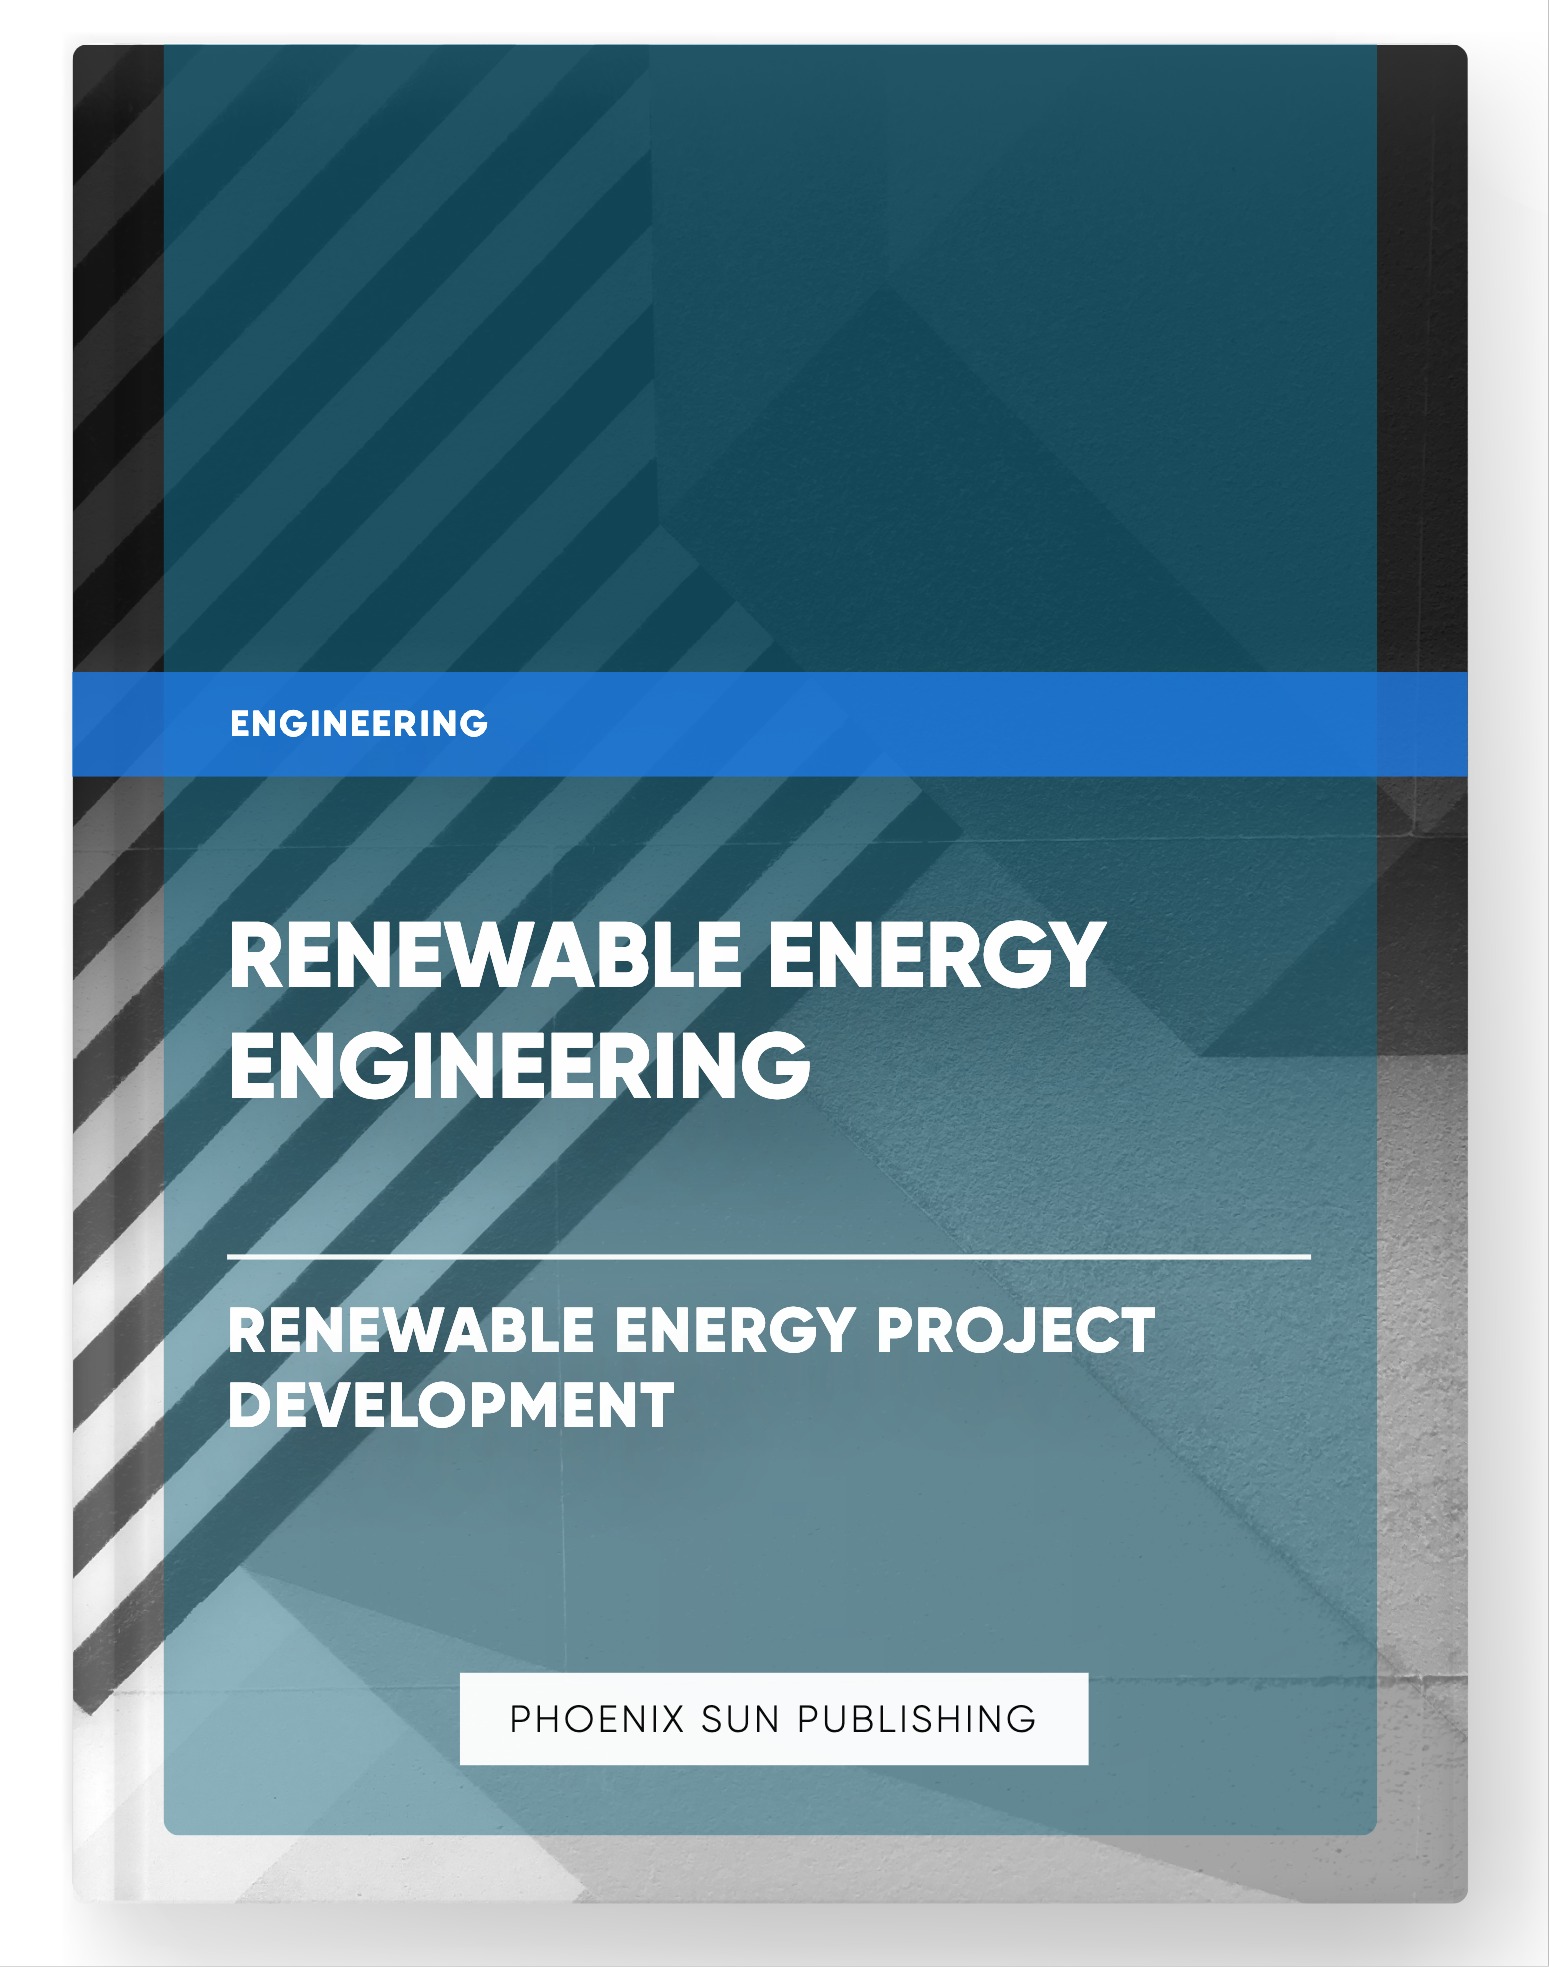 Renewable Energy Engineering – Renewable Energy Project Development